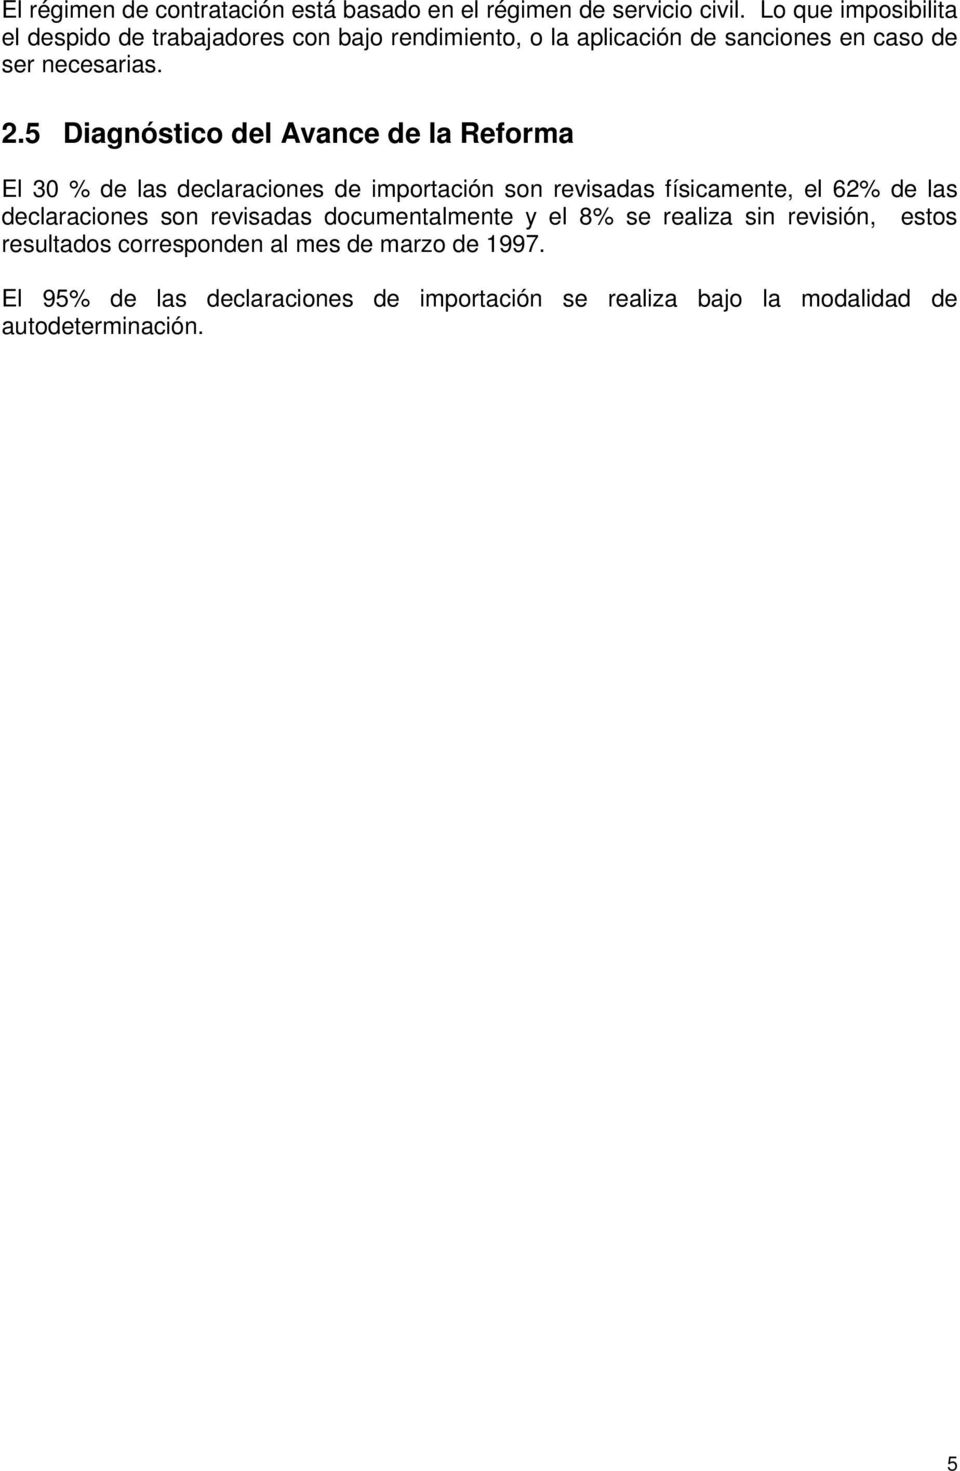 5 Diagnóstico del Avance de la Reforma El 30 % de las declaraciones de importación son revisadas físicamente, el 62% de las declaraciones